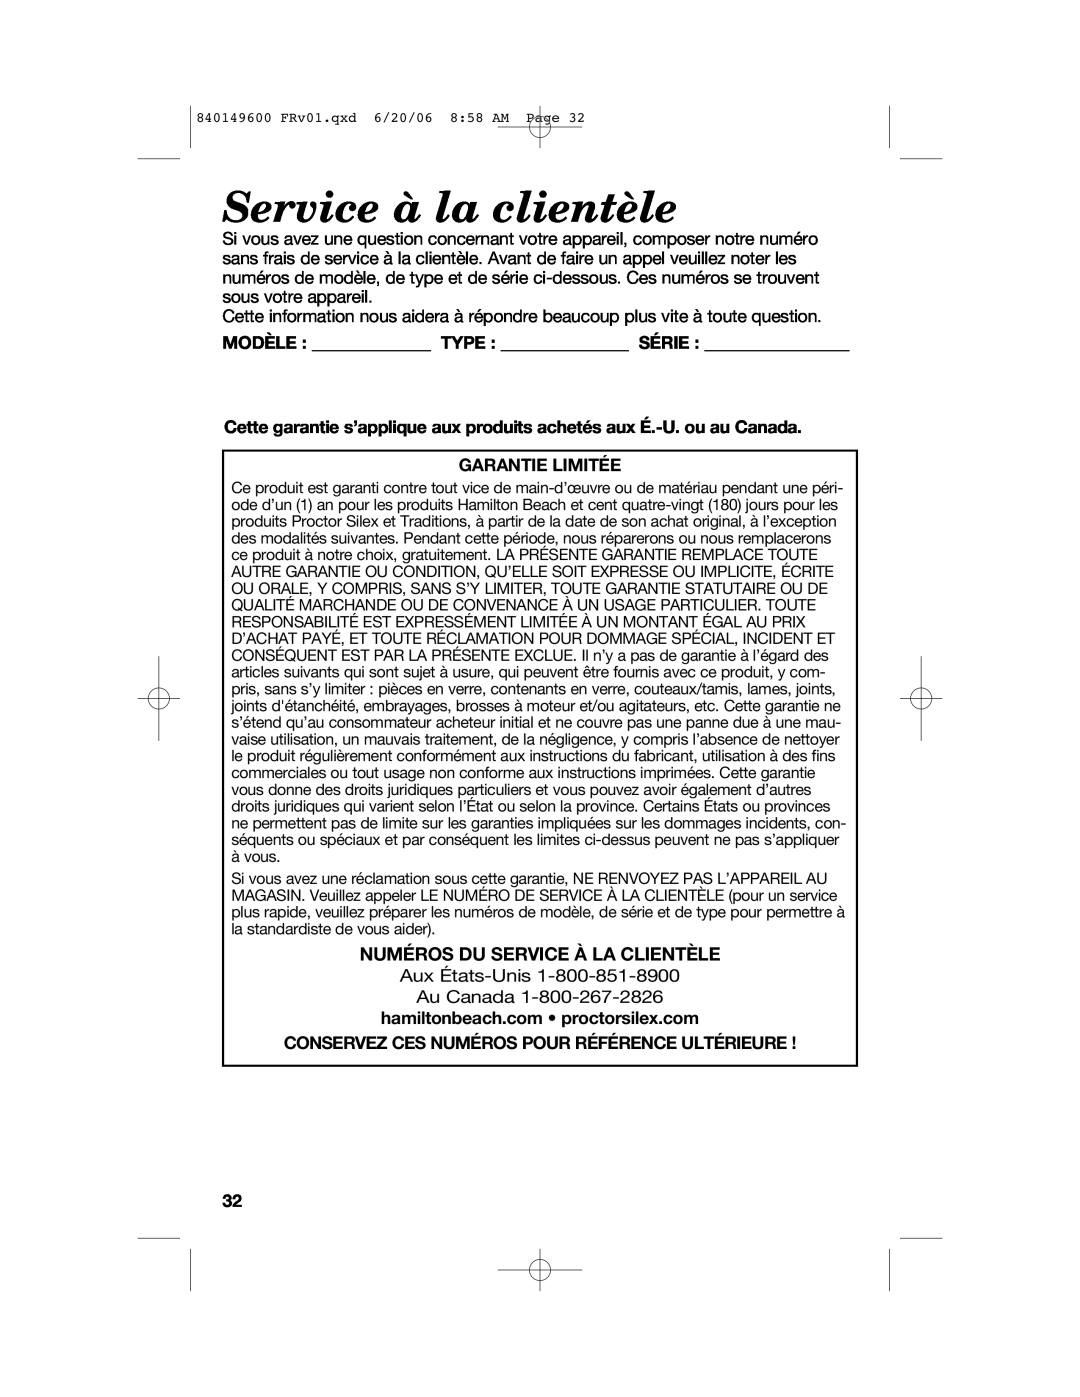 Hamilton Beach 840149600 manual Service à la clientèle, Numéros Du Service À La Clientèle, Garantie Limitée 